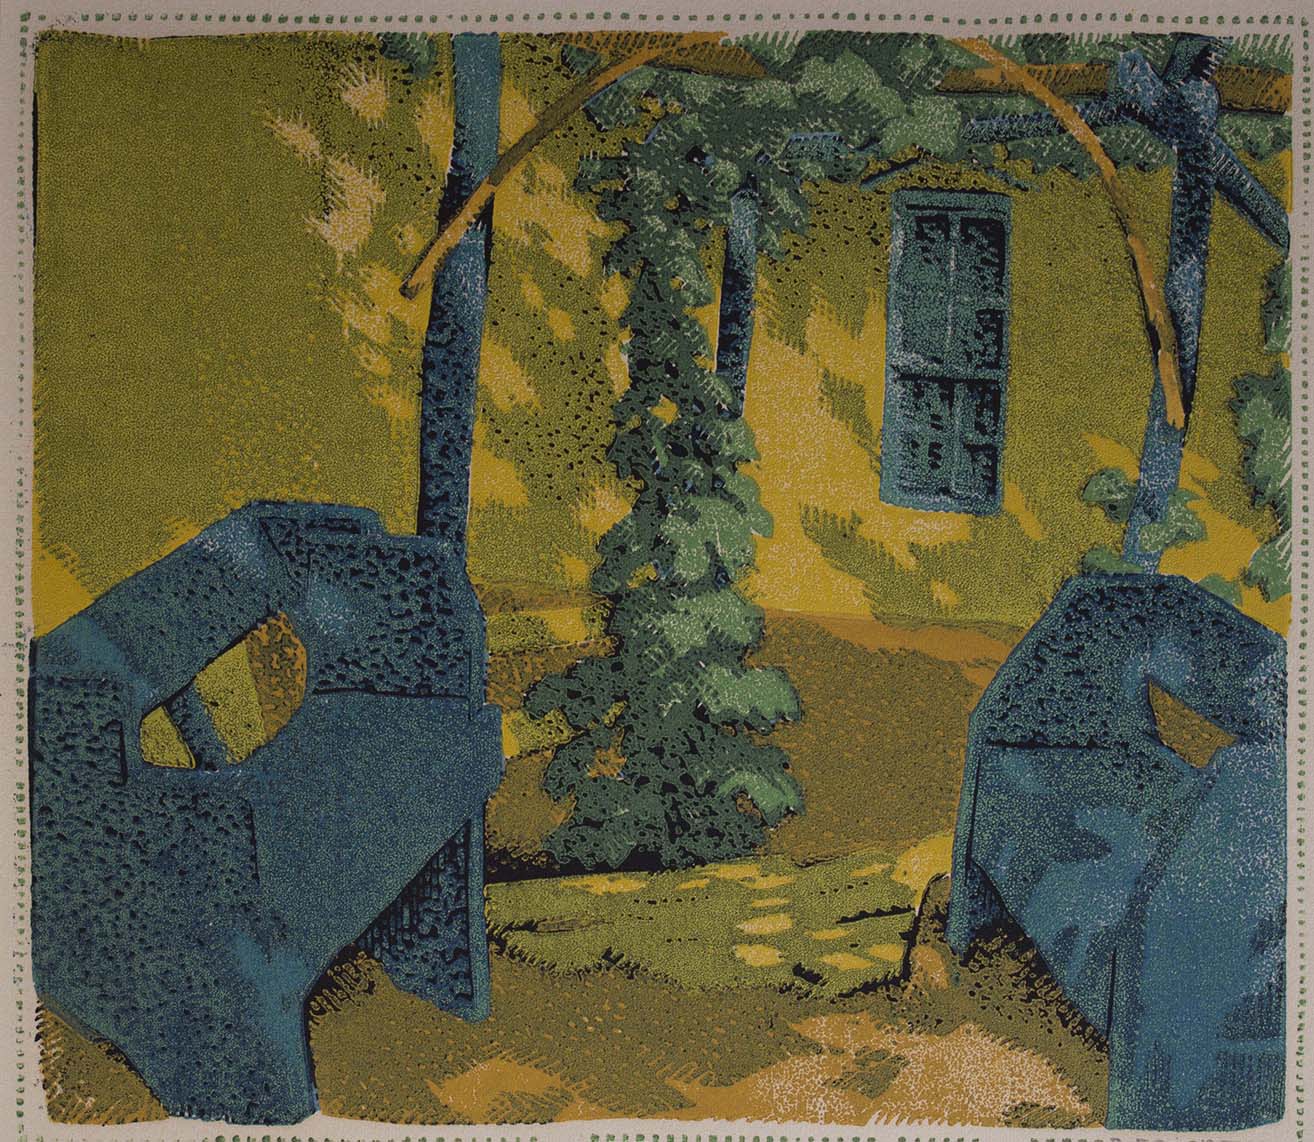 Gustave Baumann, "A Quit Corner," color woodcut